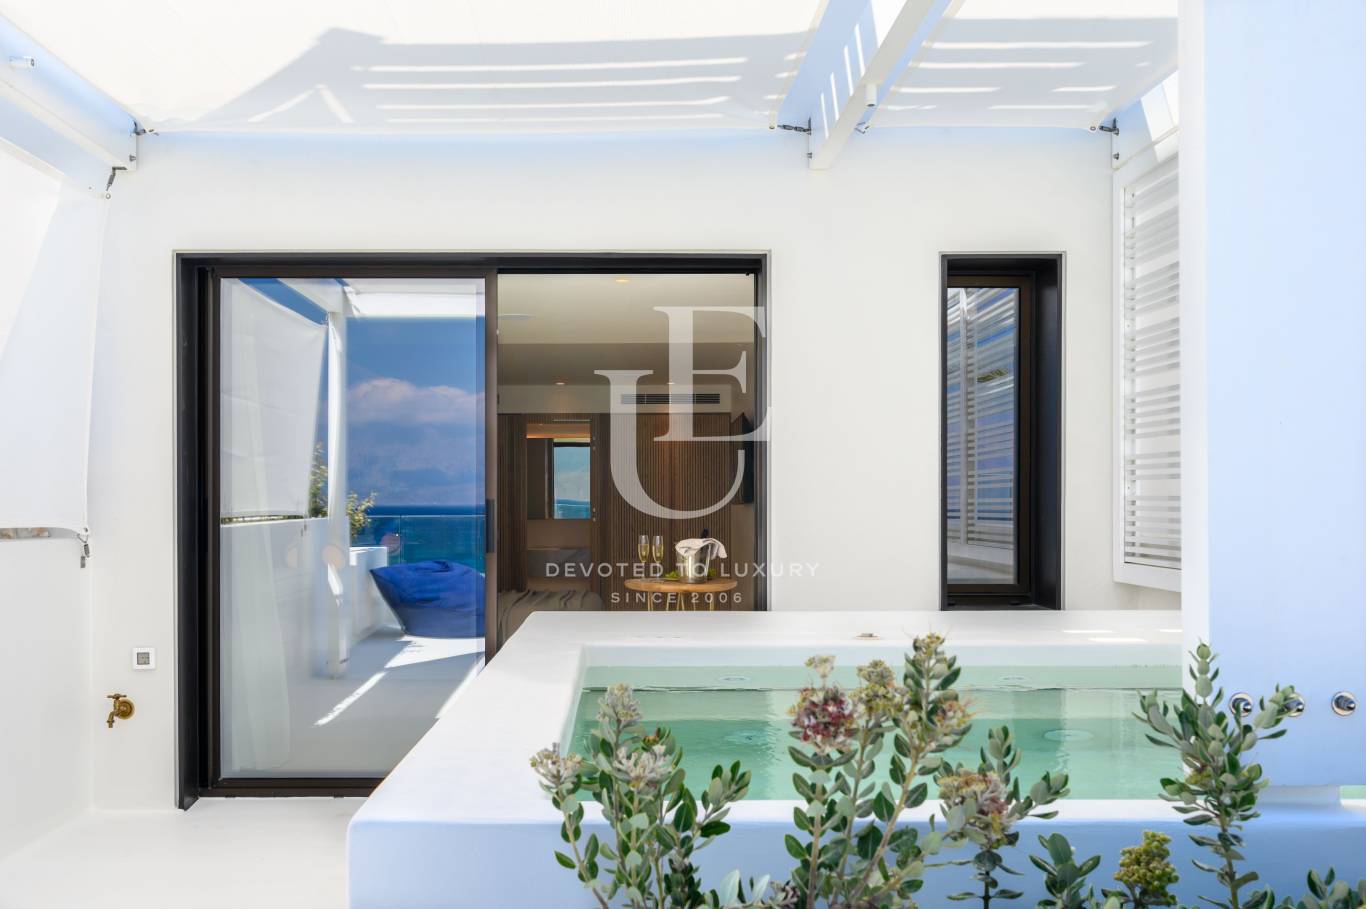 Хотел / Apartment house за продажба в остров Крит,  - код на имота: N21077 - image 15